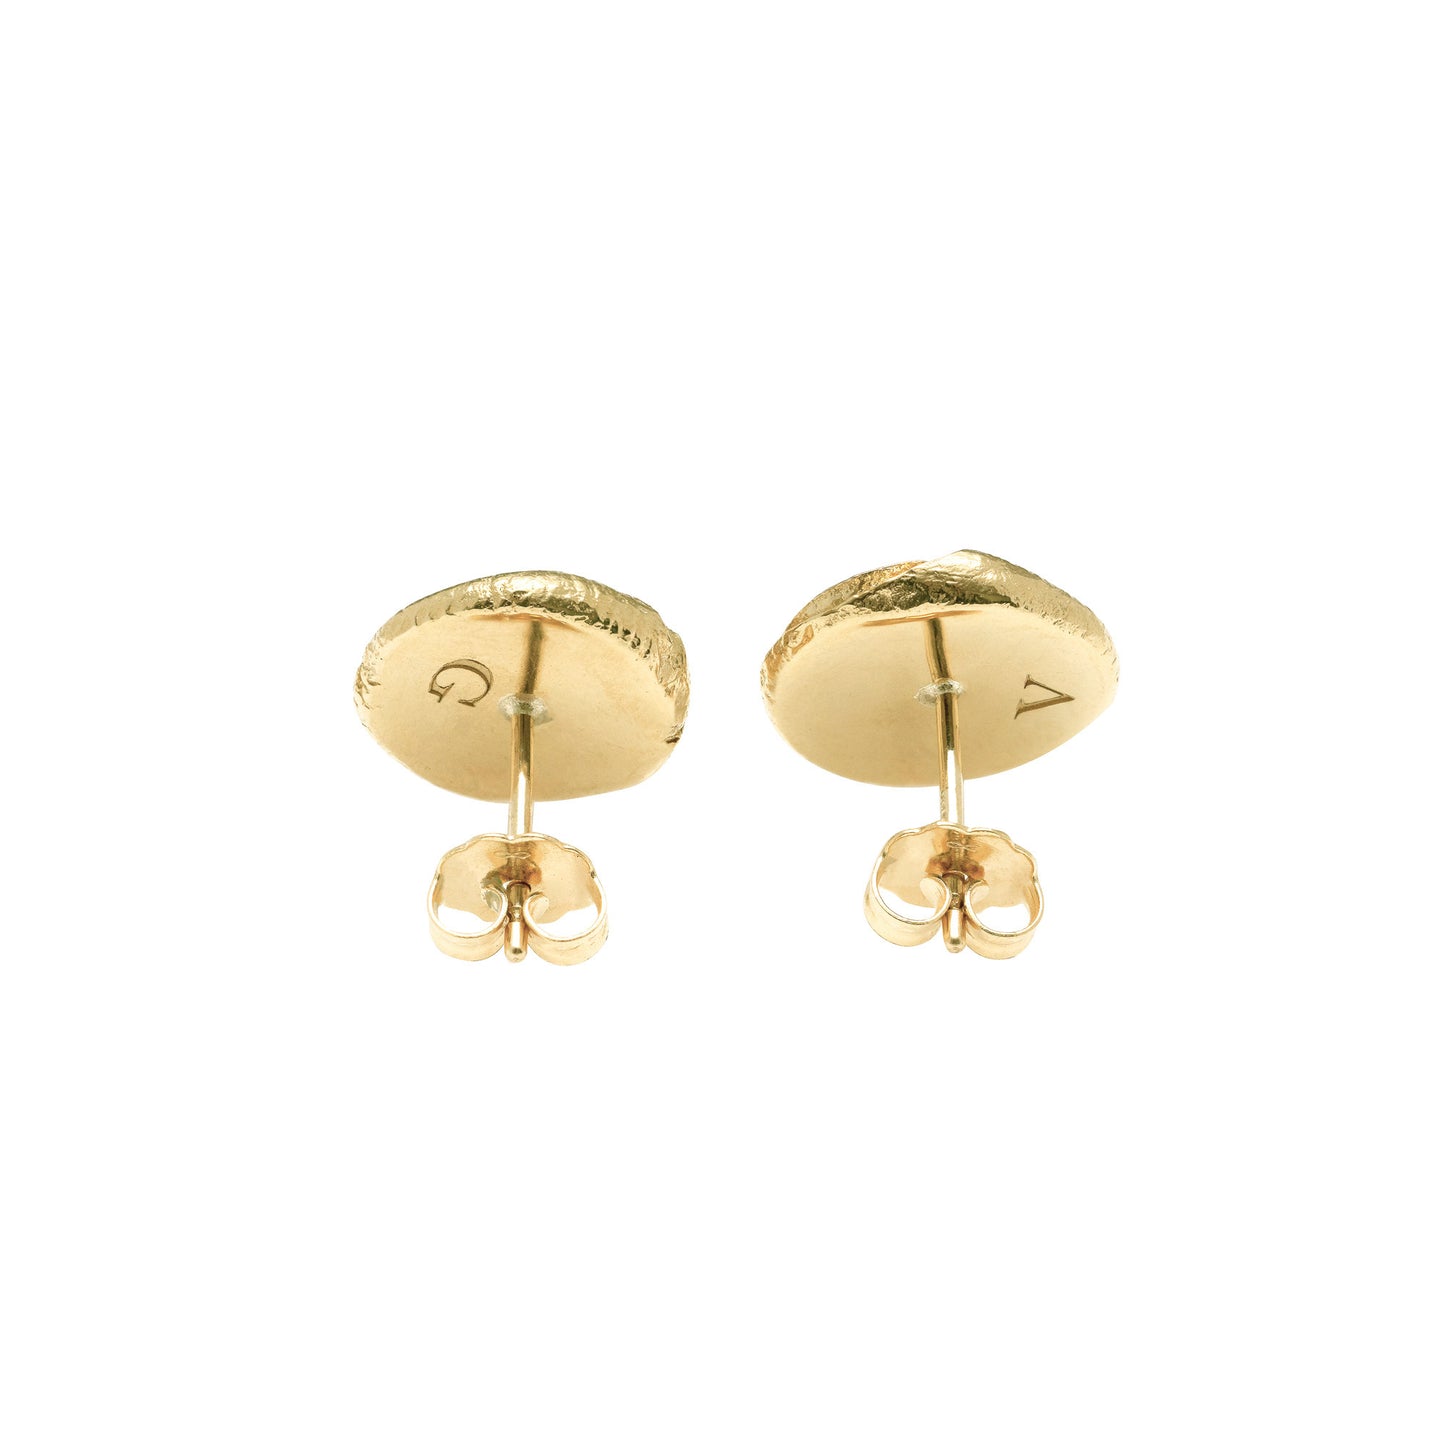 Fingerprints Earrings in solid gold